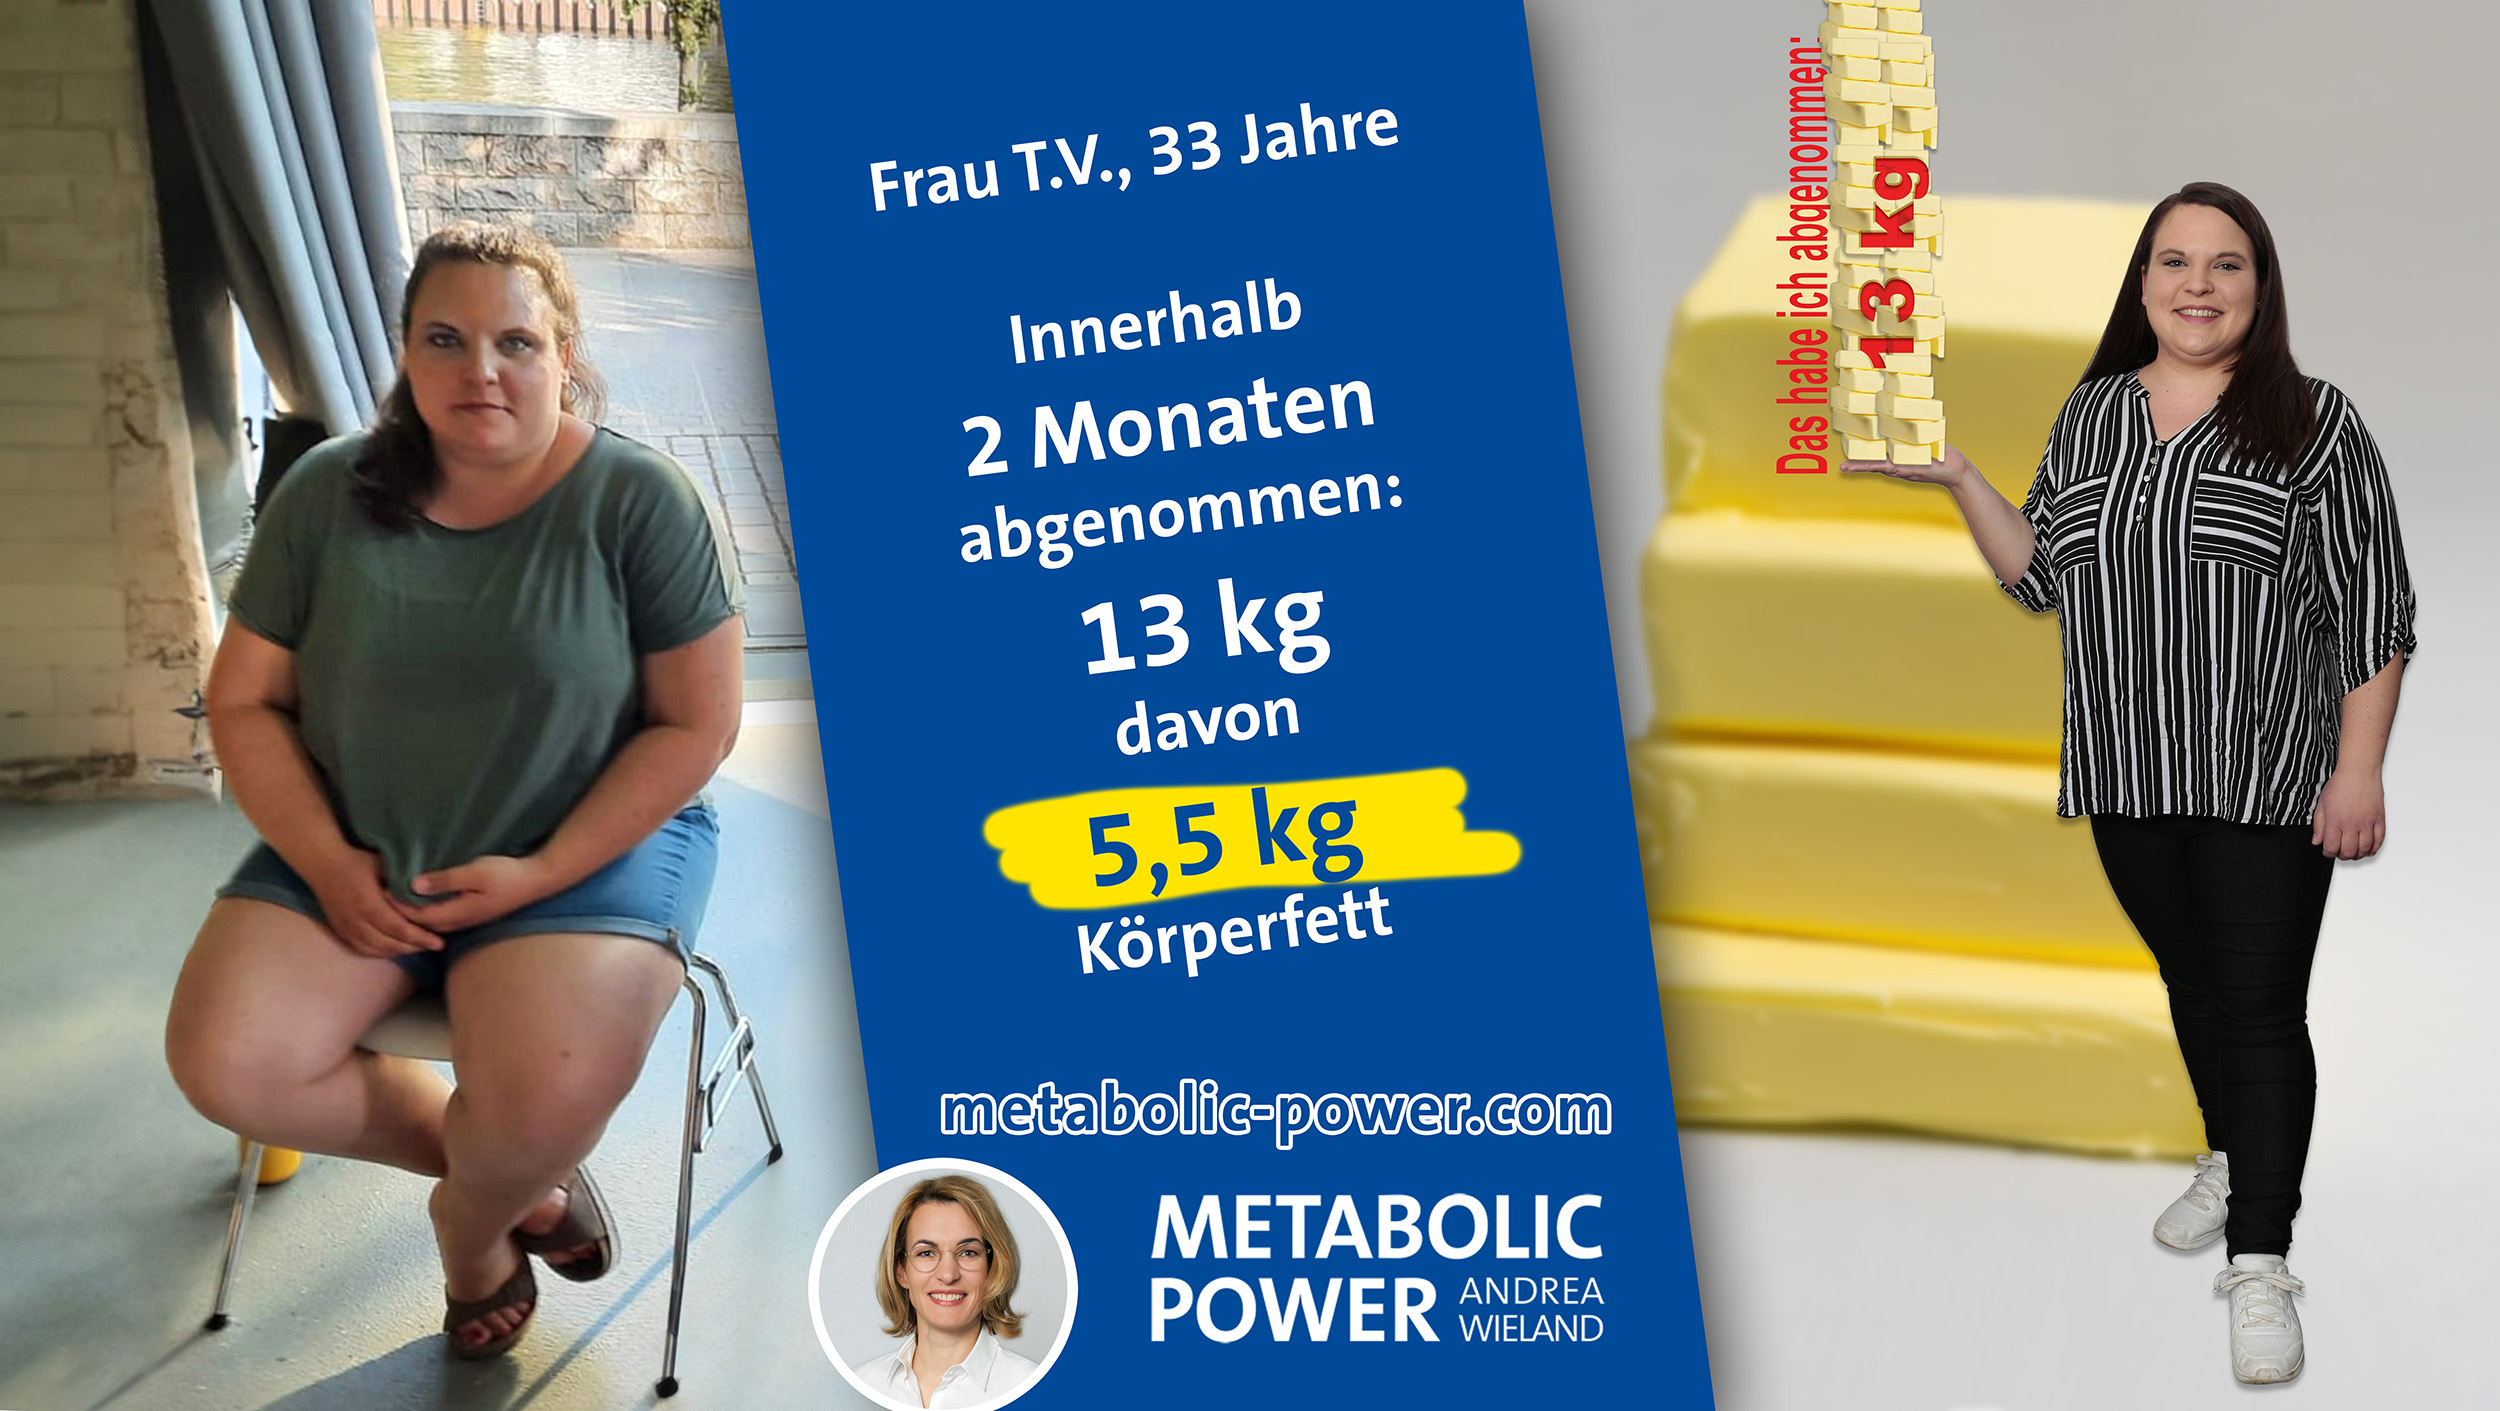 Andrea Wieland Metabolic Power Abnehmen aber sicher - T. V. 13 kg in 2 Monaten abgenommen